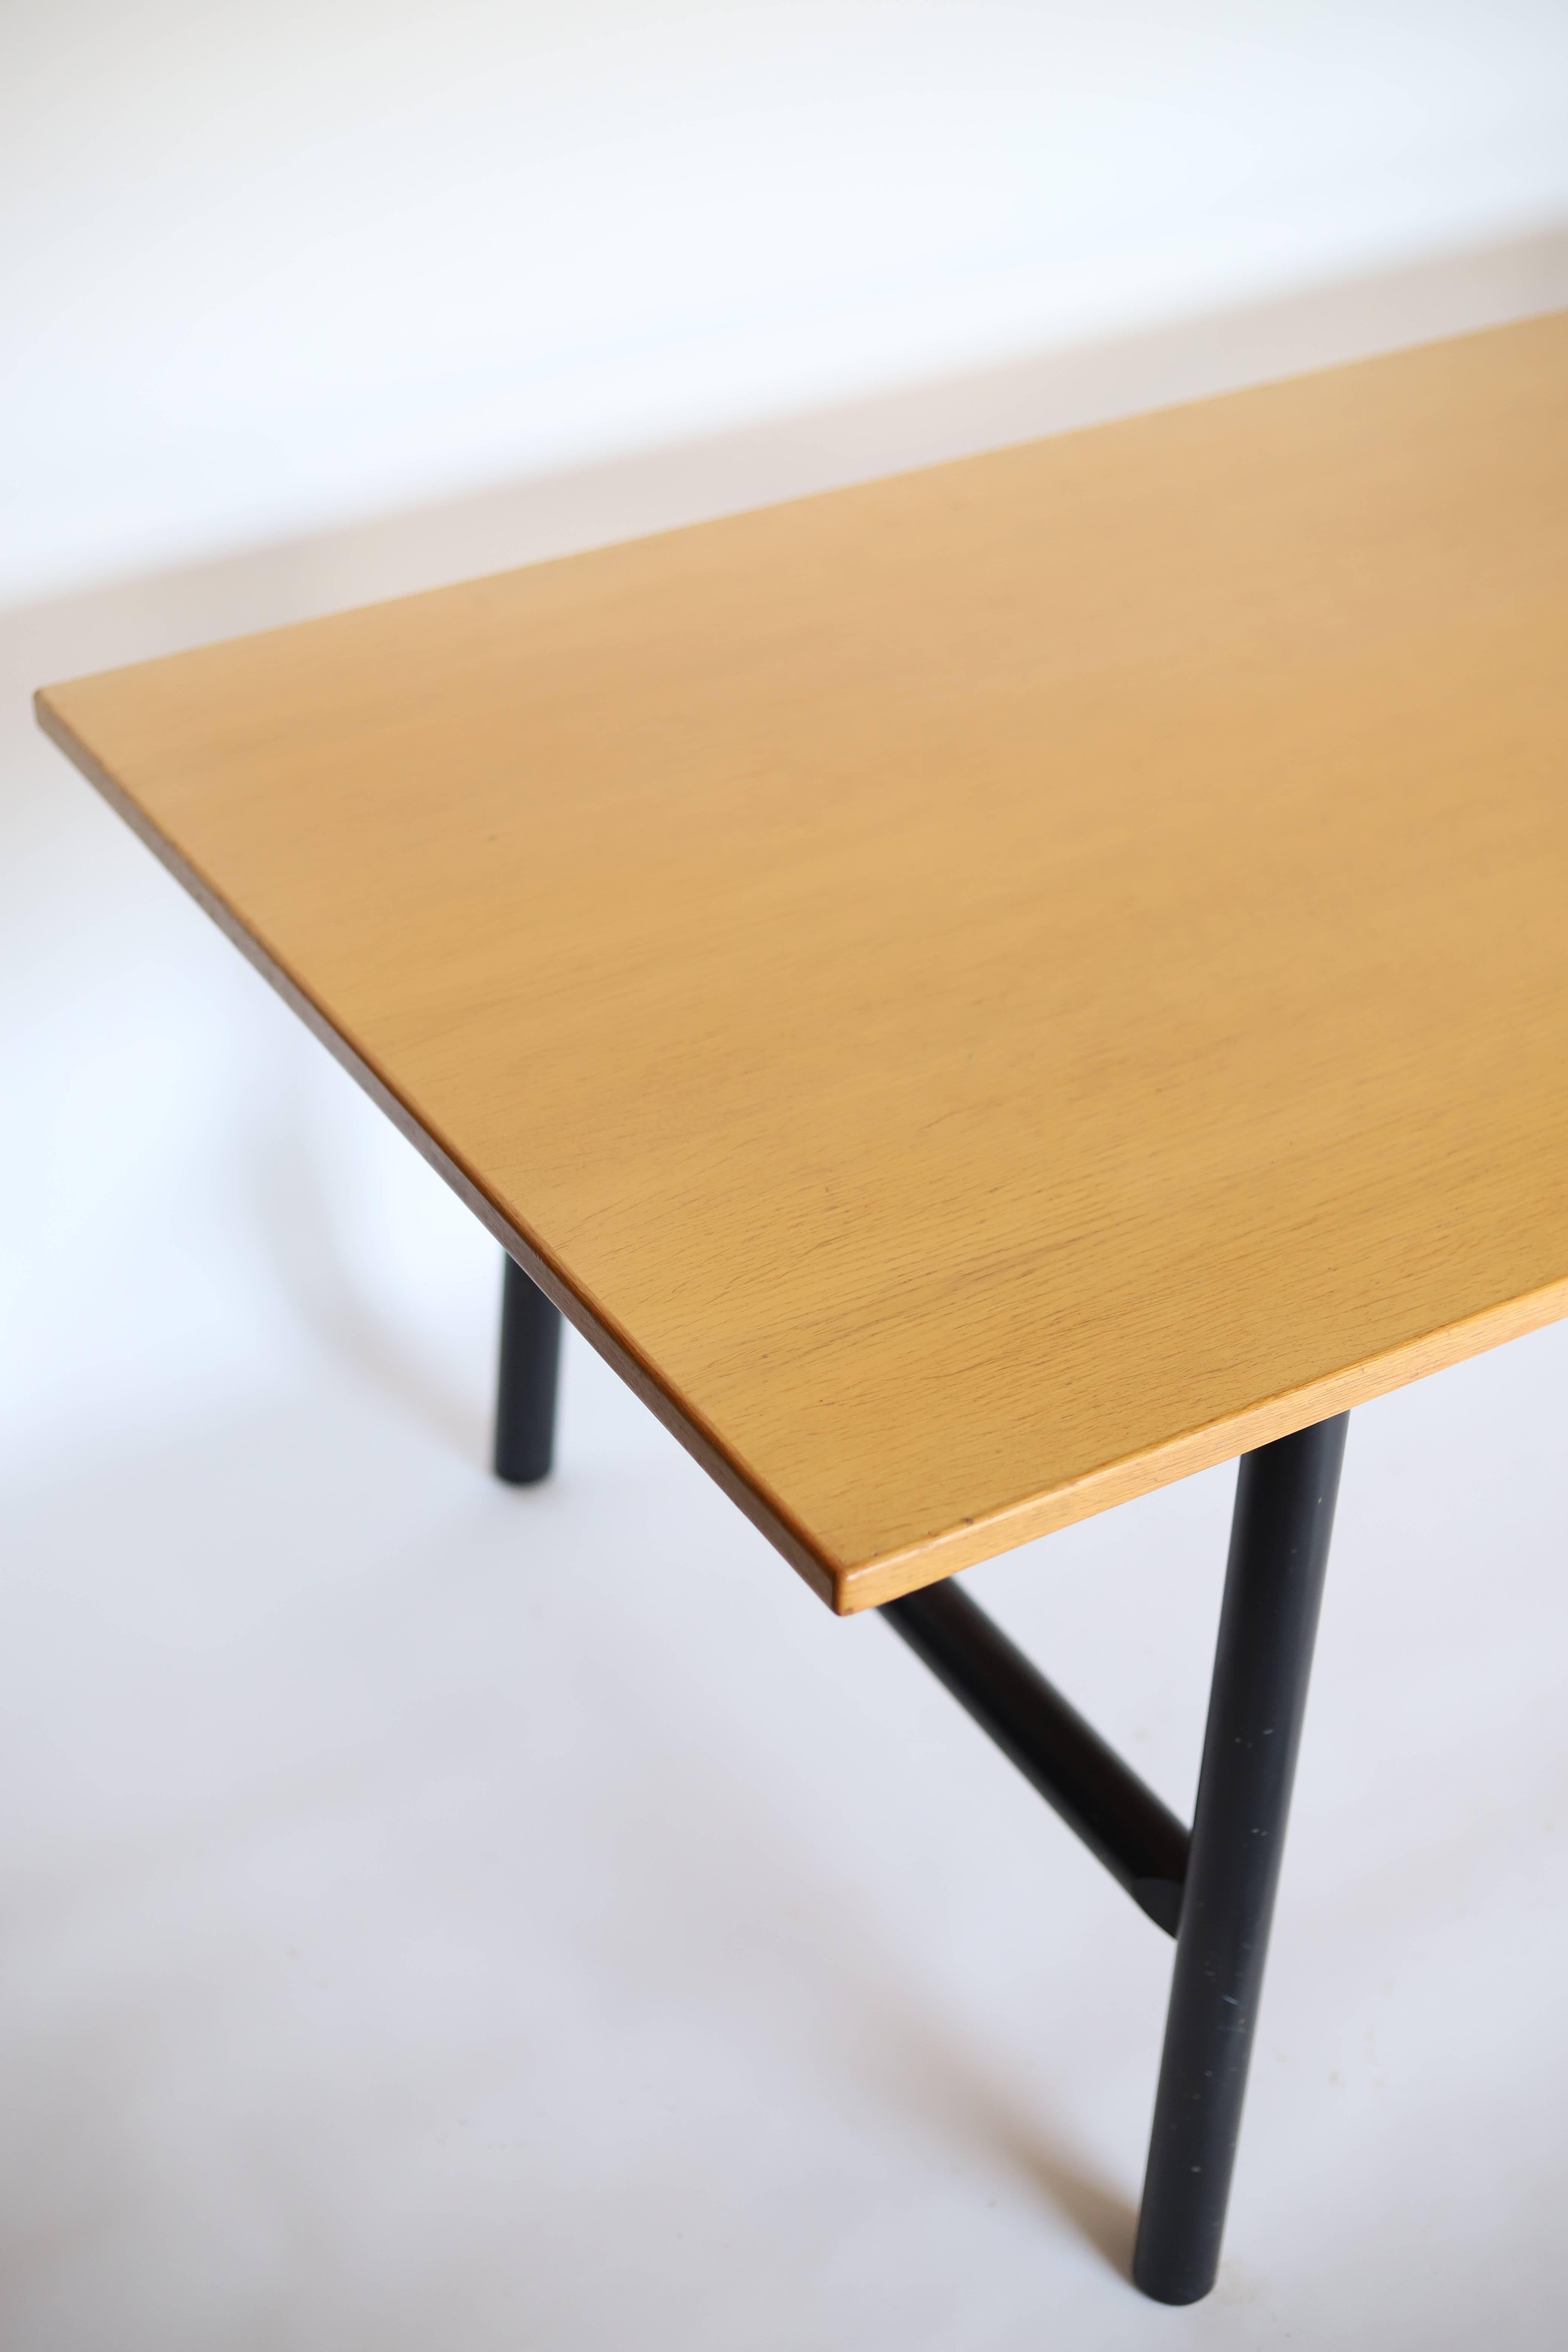 La table de salle à manger ou le bureau de l'ébéniste danois présente un plateau en bois clair et des pieds ronds noirs. Le plateau de la table est fabriqué à partir d'un bois clair de haute qualité, qui présente un aspect naturel et chaleureux. Sa